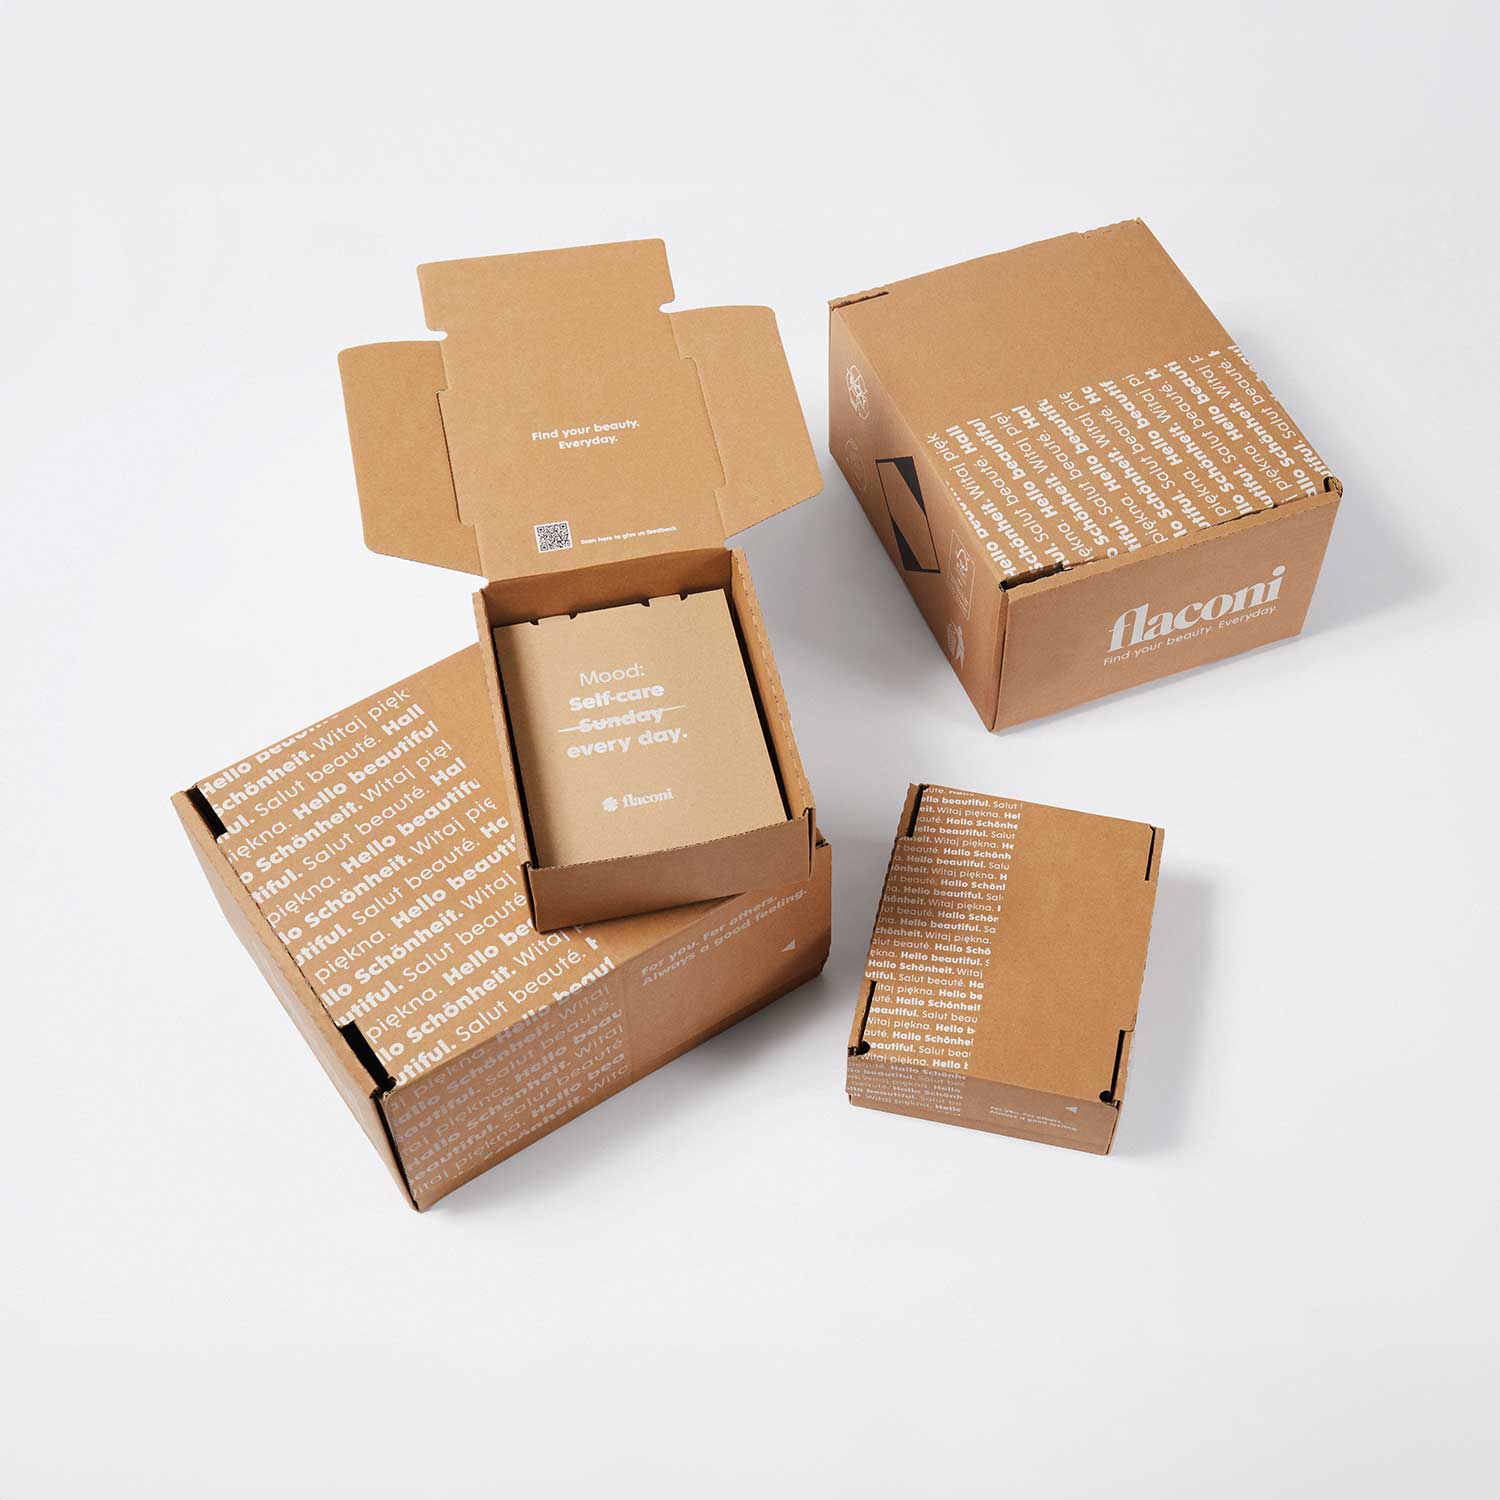 Versandverpackungen für flaconi E-Commerce